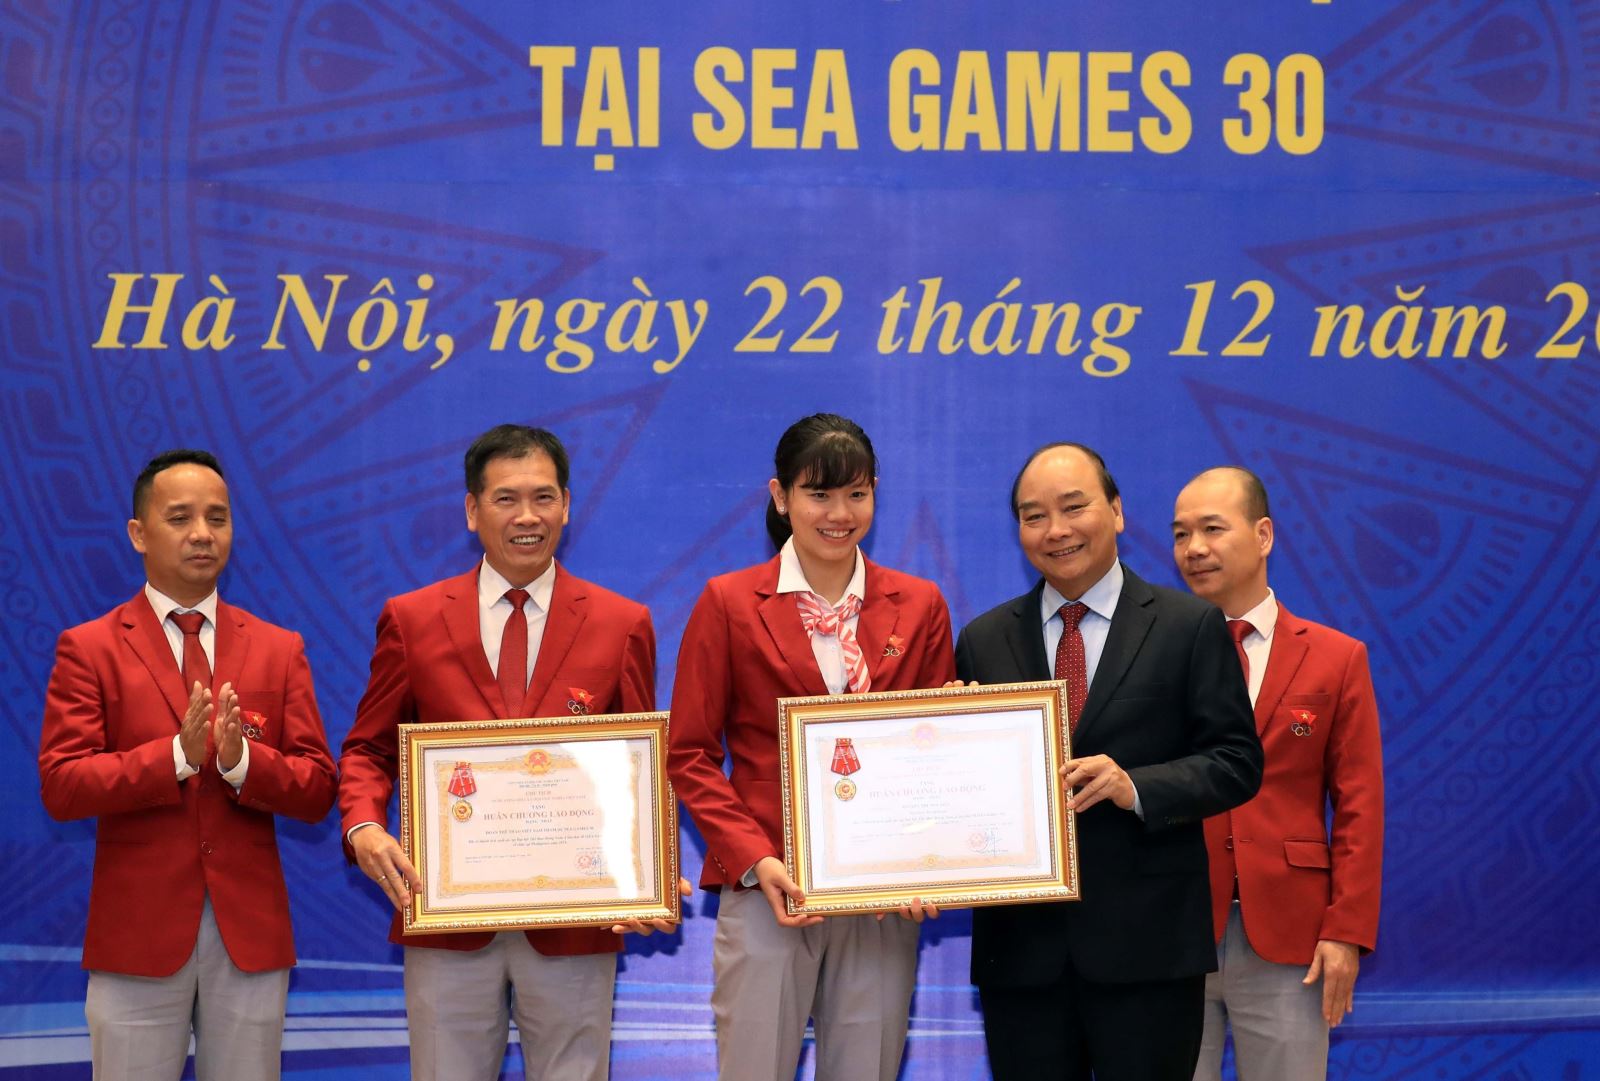 Nguyễn Thị Ánh Viên vinh dự được Thủ tướng Nguyễn Xuân Phúc trao Huân chương Lao động hạng Nhất sau những thành tích tại SEA Games 30. Ảnh: TTXVN